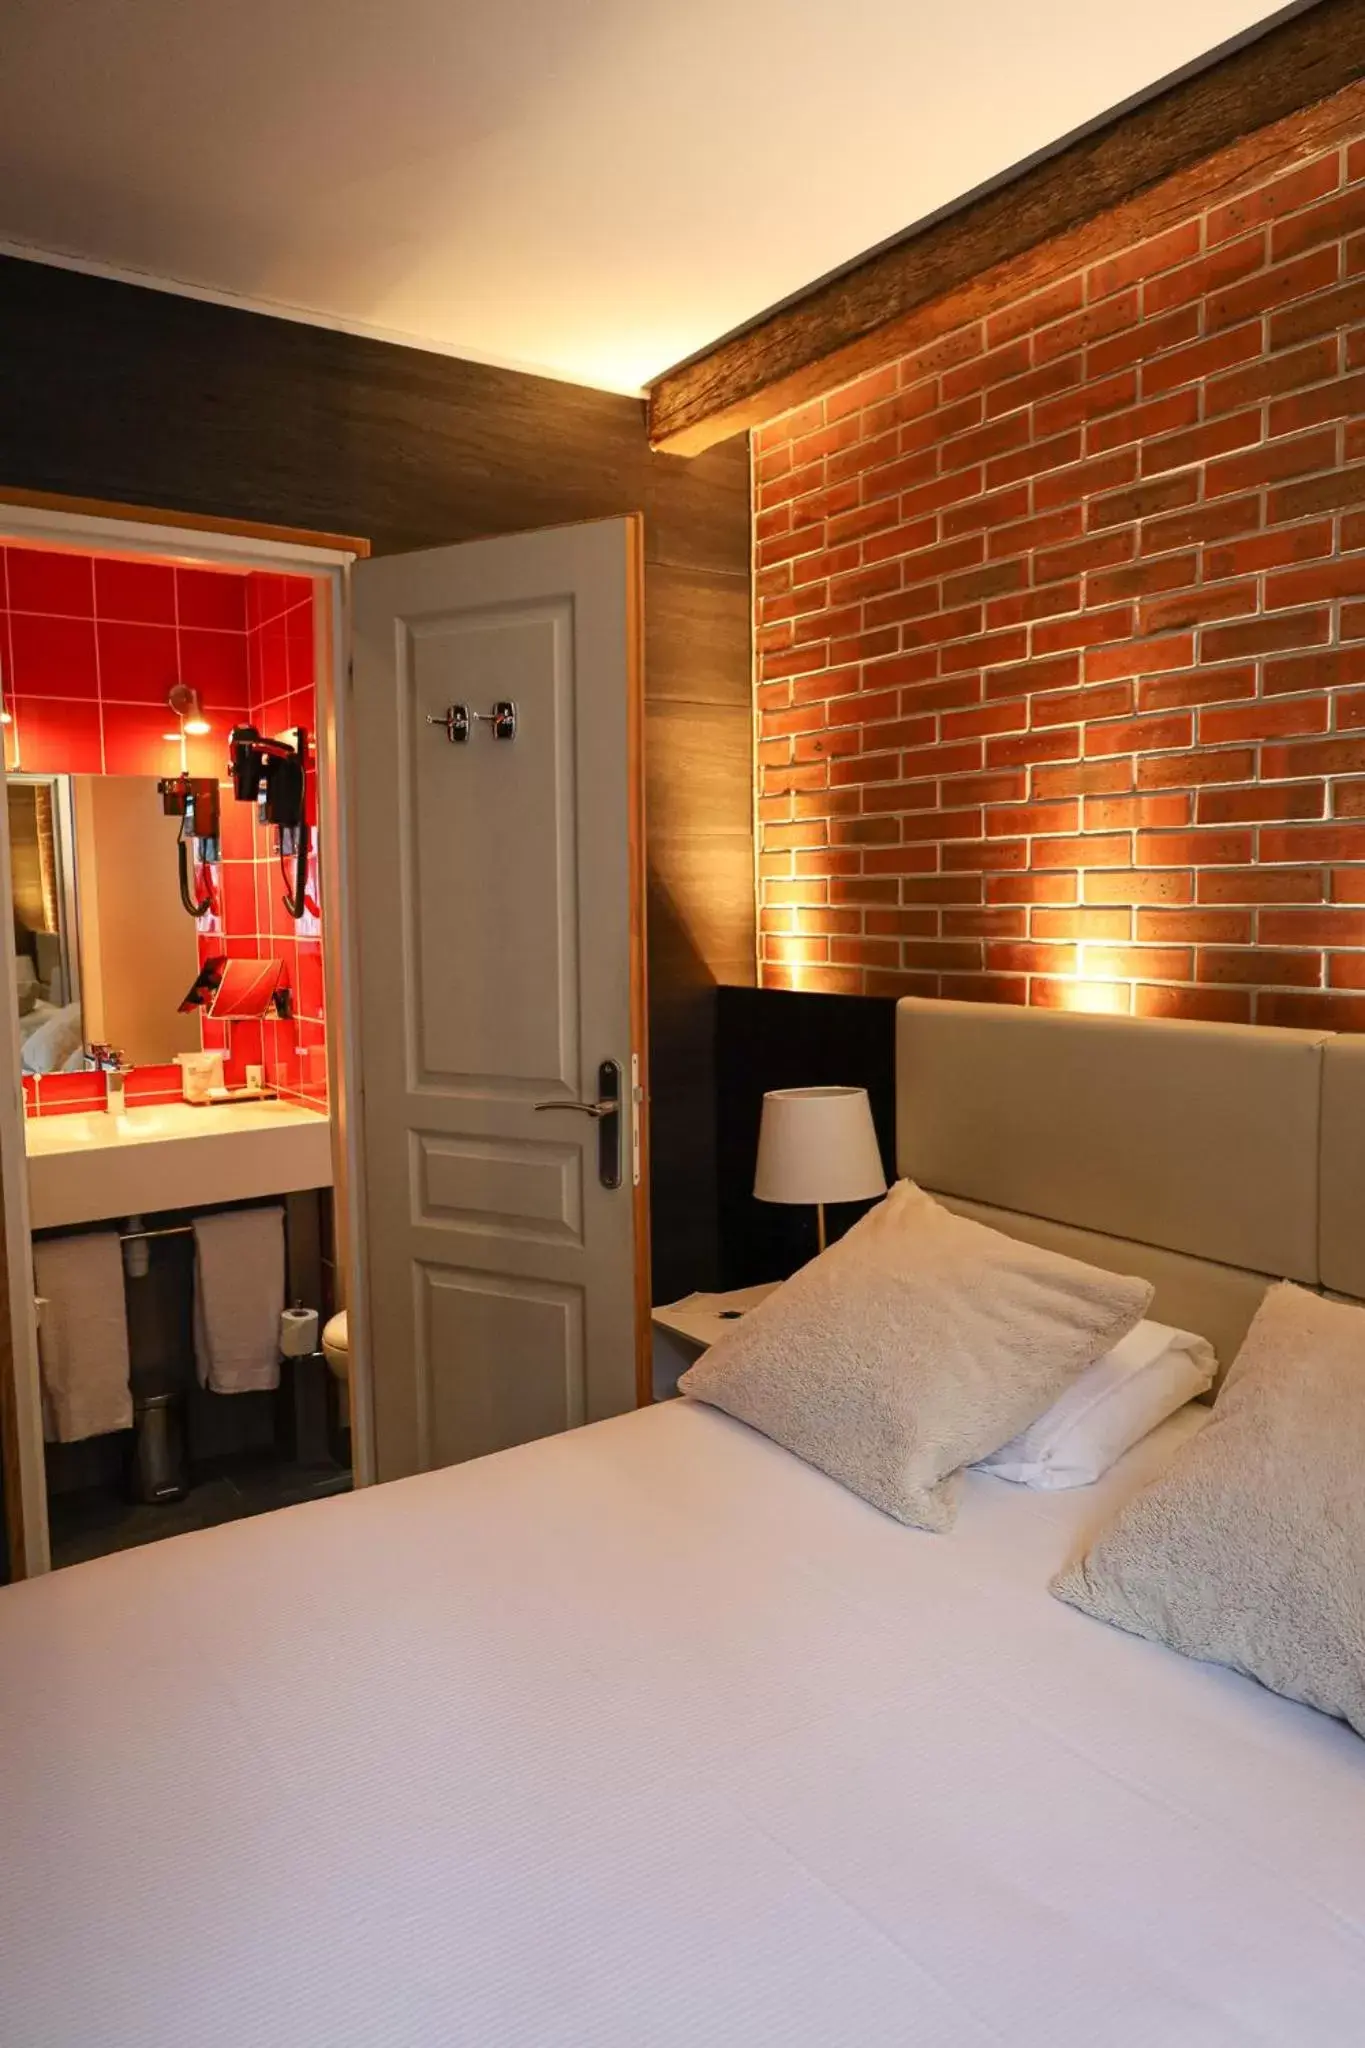 Bed in Best Western Plus Hotel de Dieppe 1880